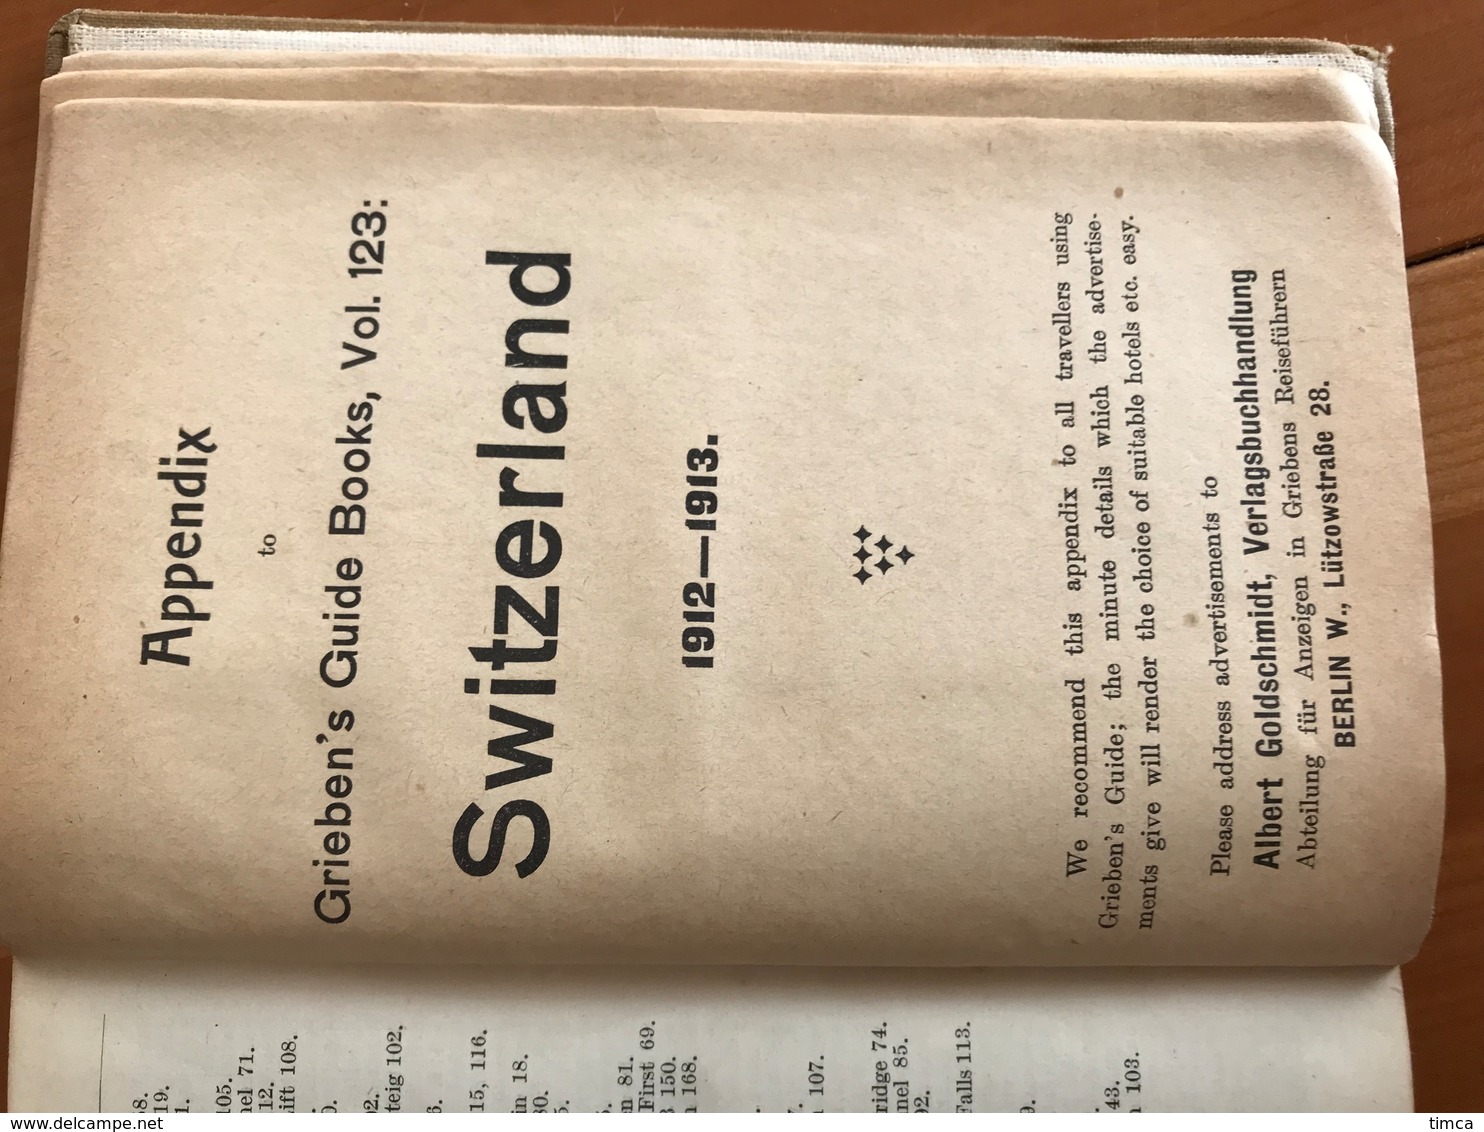 00001 Guide touristique - Grieben's Guide Books Switzerland 1912 - Williams & Norgate